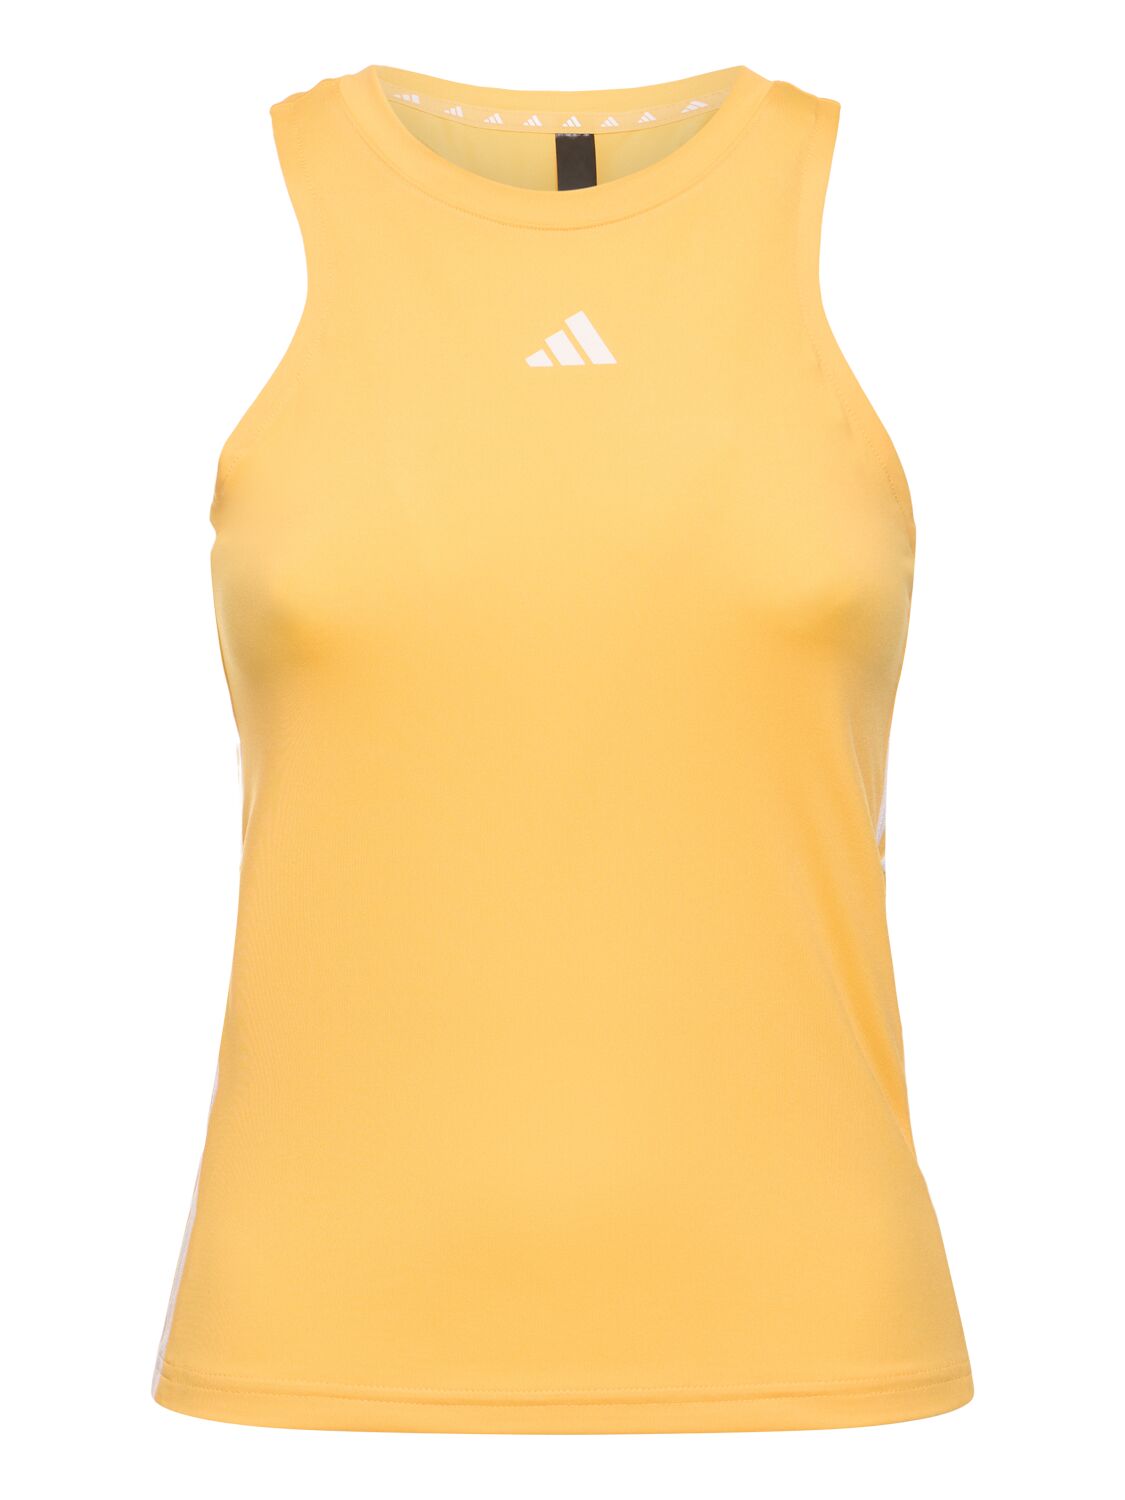 Adidas Originals 三条纹背心 In Orange,yellow